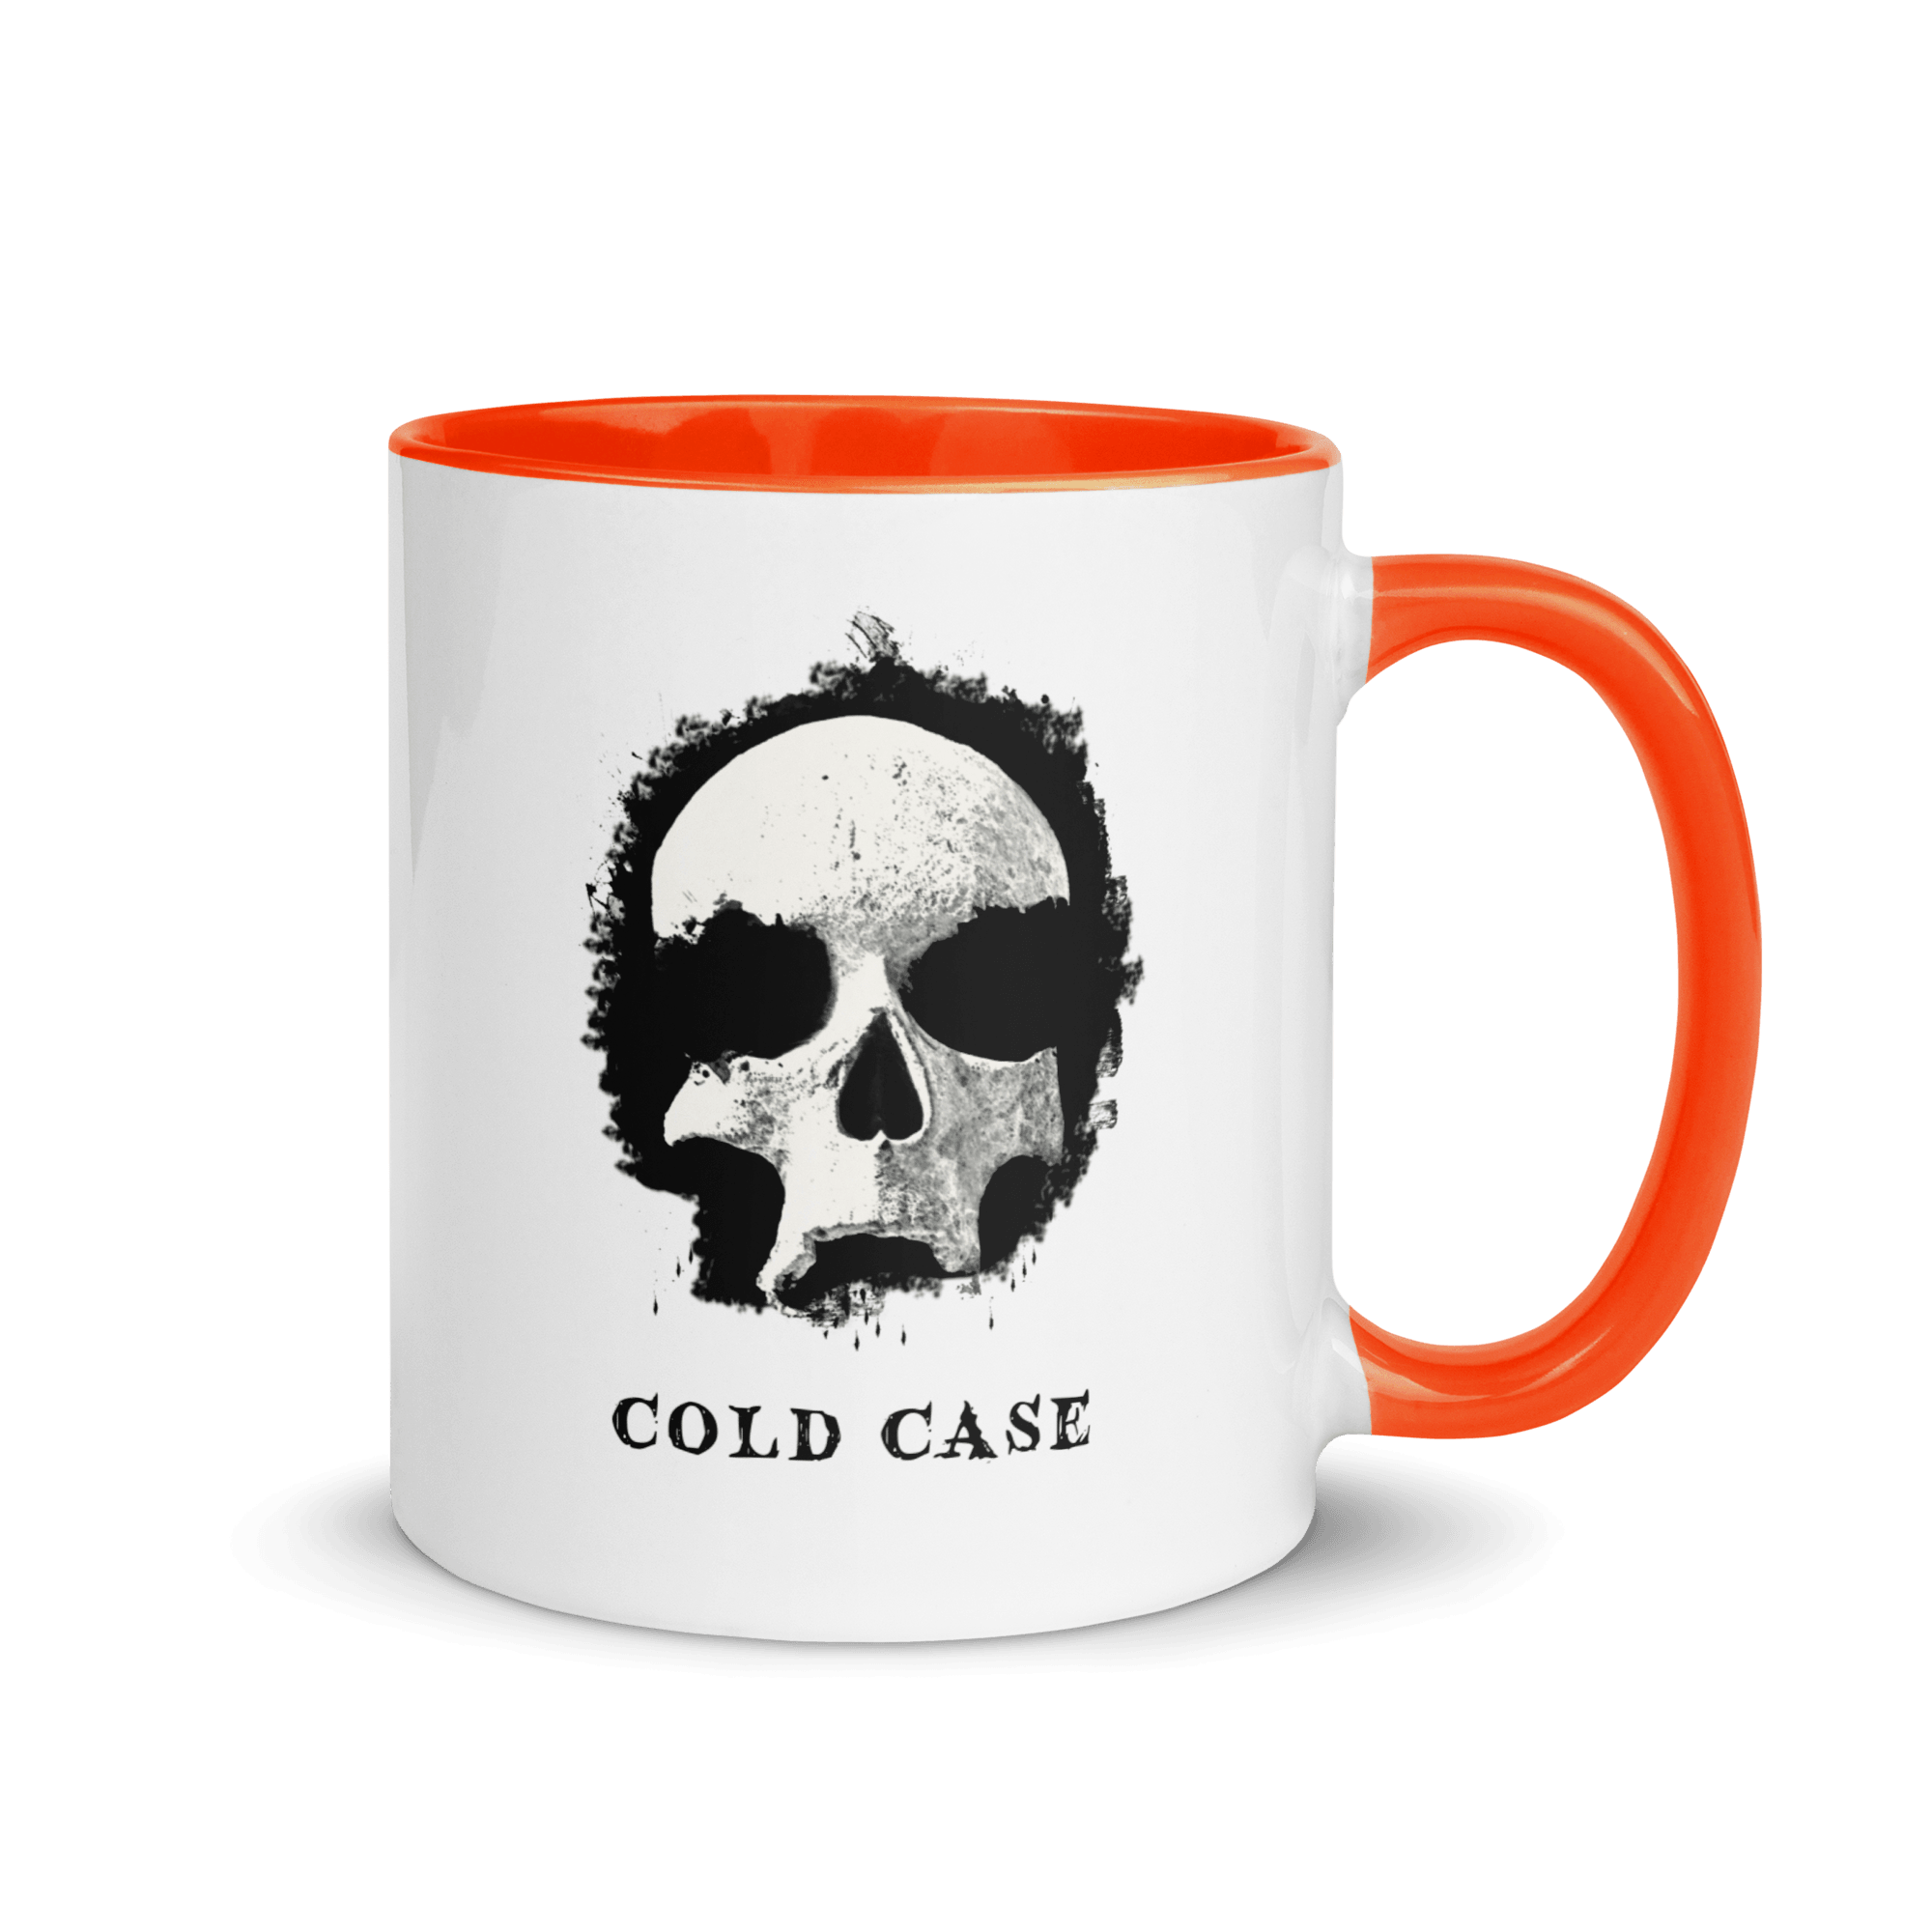 Cold Case Mug with Color Inside